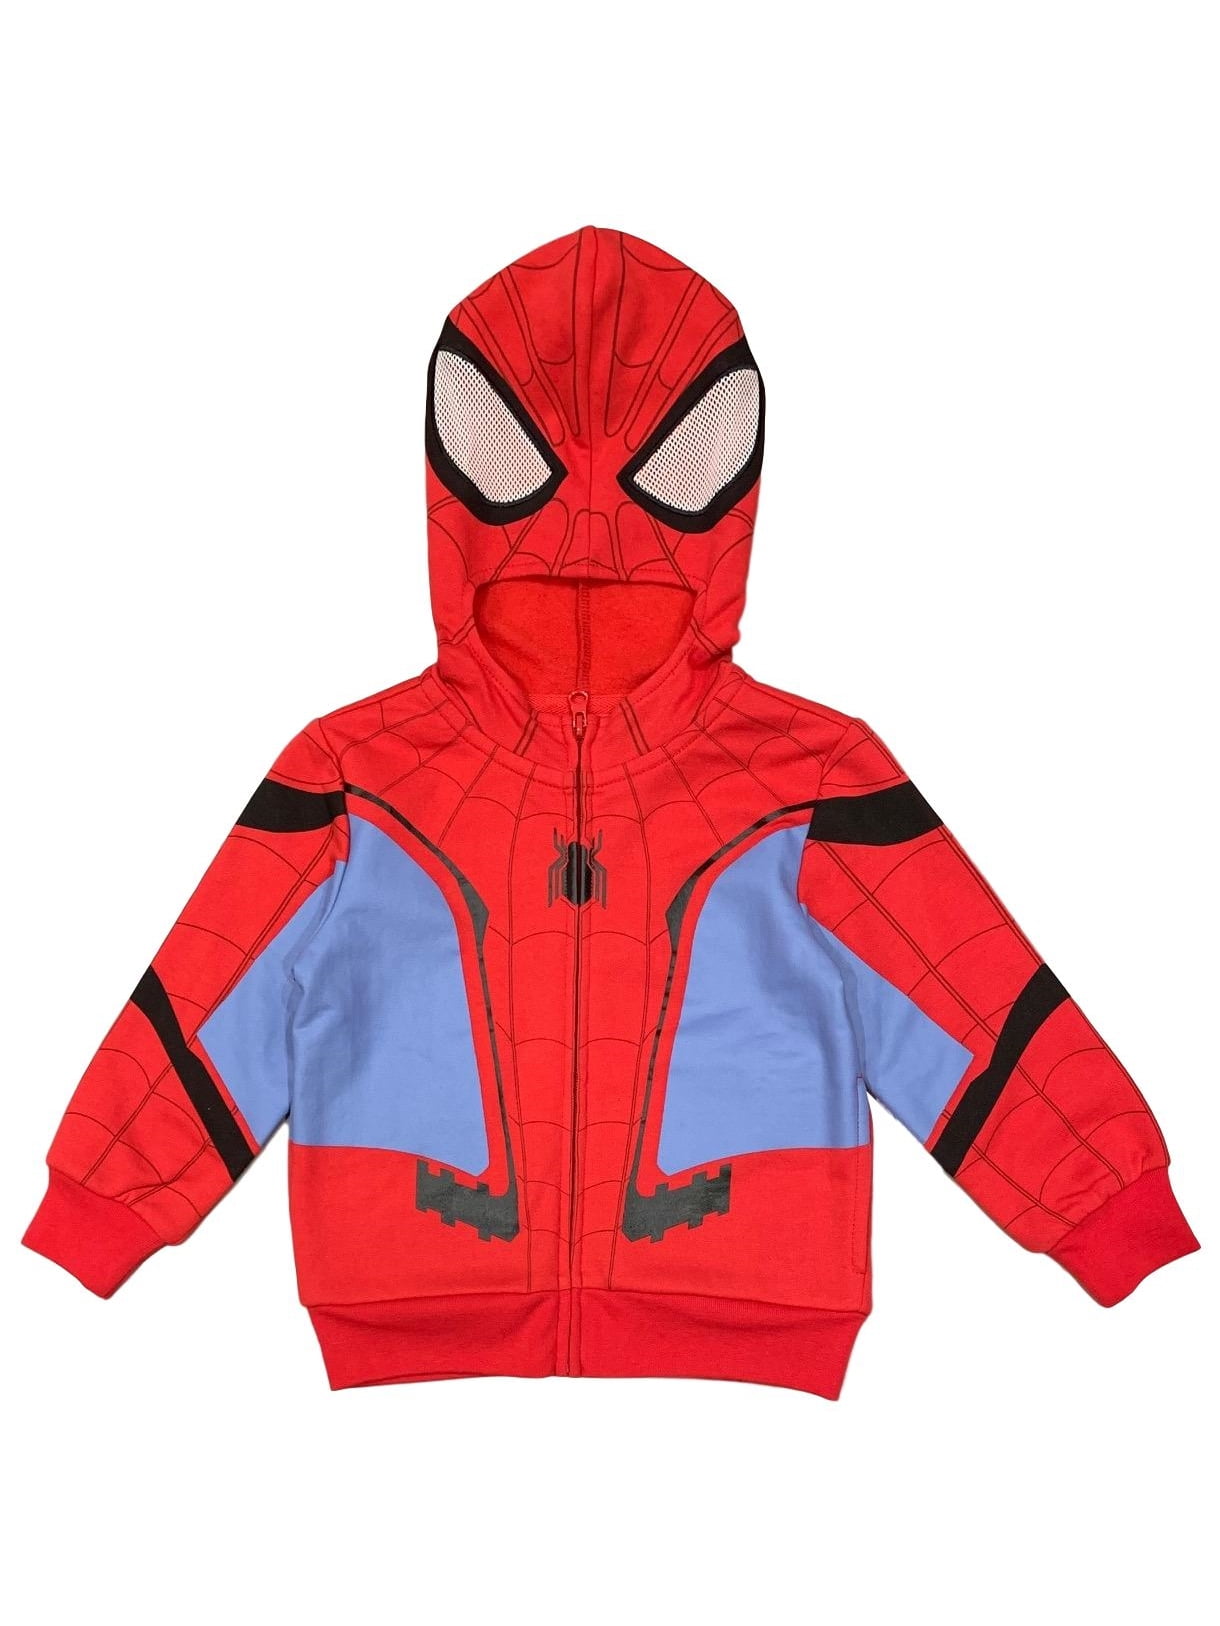 Spiderman Marvel Little Boys Costume Hoodie 